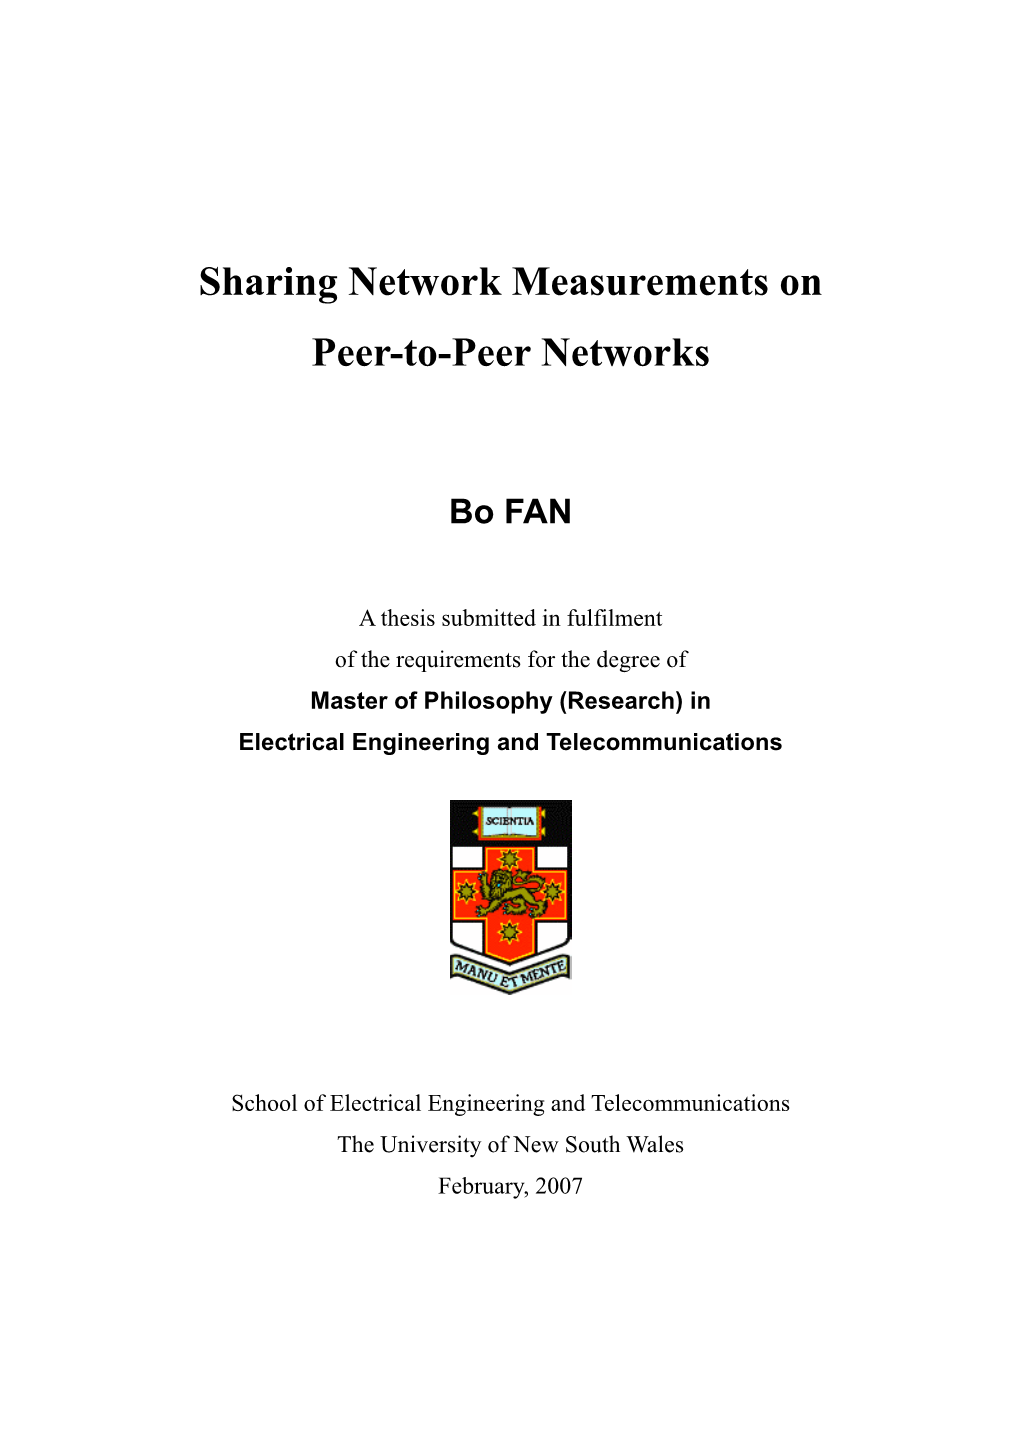 Sharing Network Measurement on Peer-To-Peer Networks